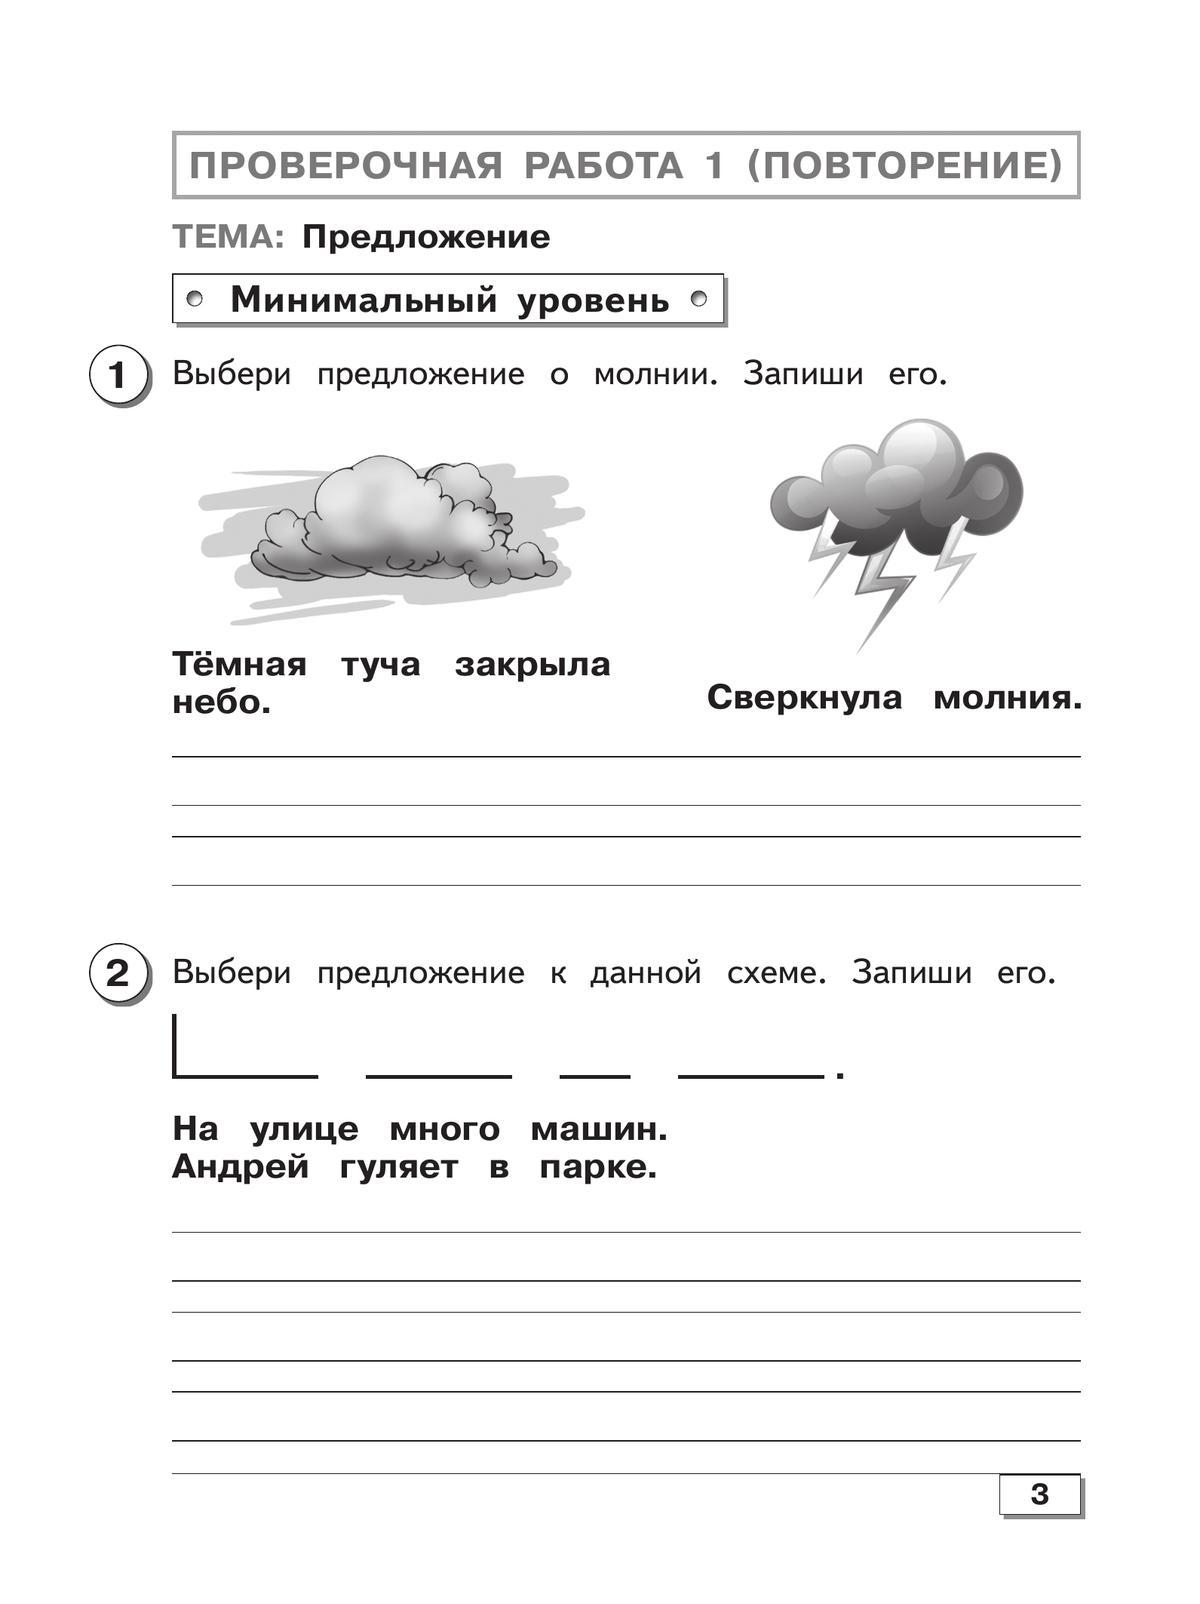 Русский язык. 3 класс. Проверочные работы (для обучающихся с интеллектуальными нарушениями) 5